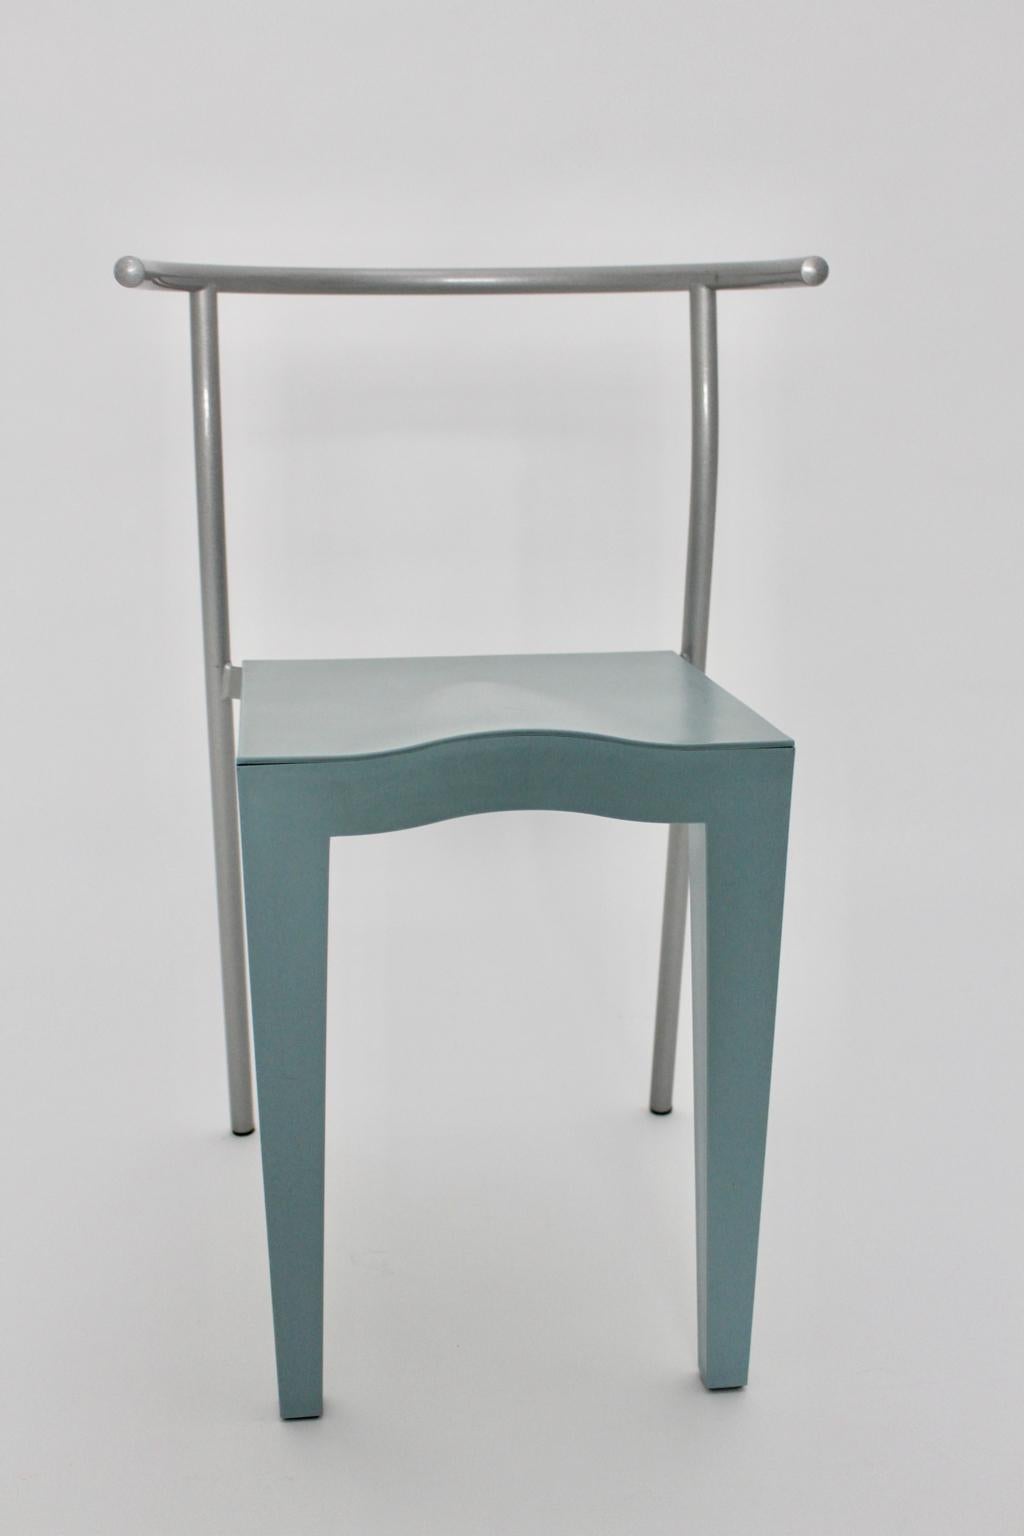 Der postmoderne hellblaue Vintage-Stuhl wurde in den 1980er Jahren von Philippe Starck entworfen und von Kartell Italien ausgeführt.
Der Stuhl hat grau lackierte Stahlrohrfüße, außerdem wurden Sitz und Rückenlehne aus hellblauem Propylen